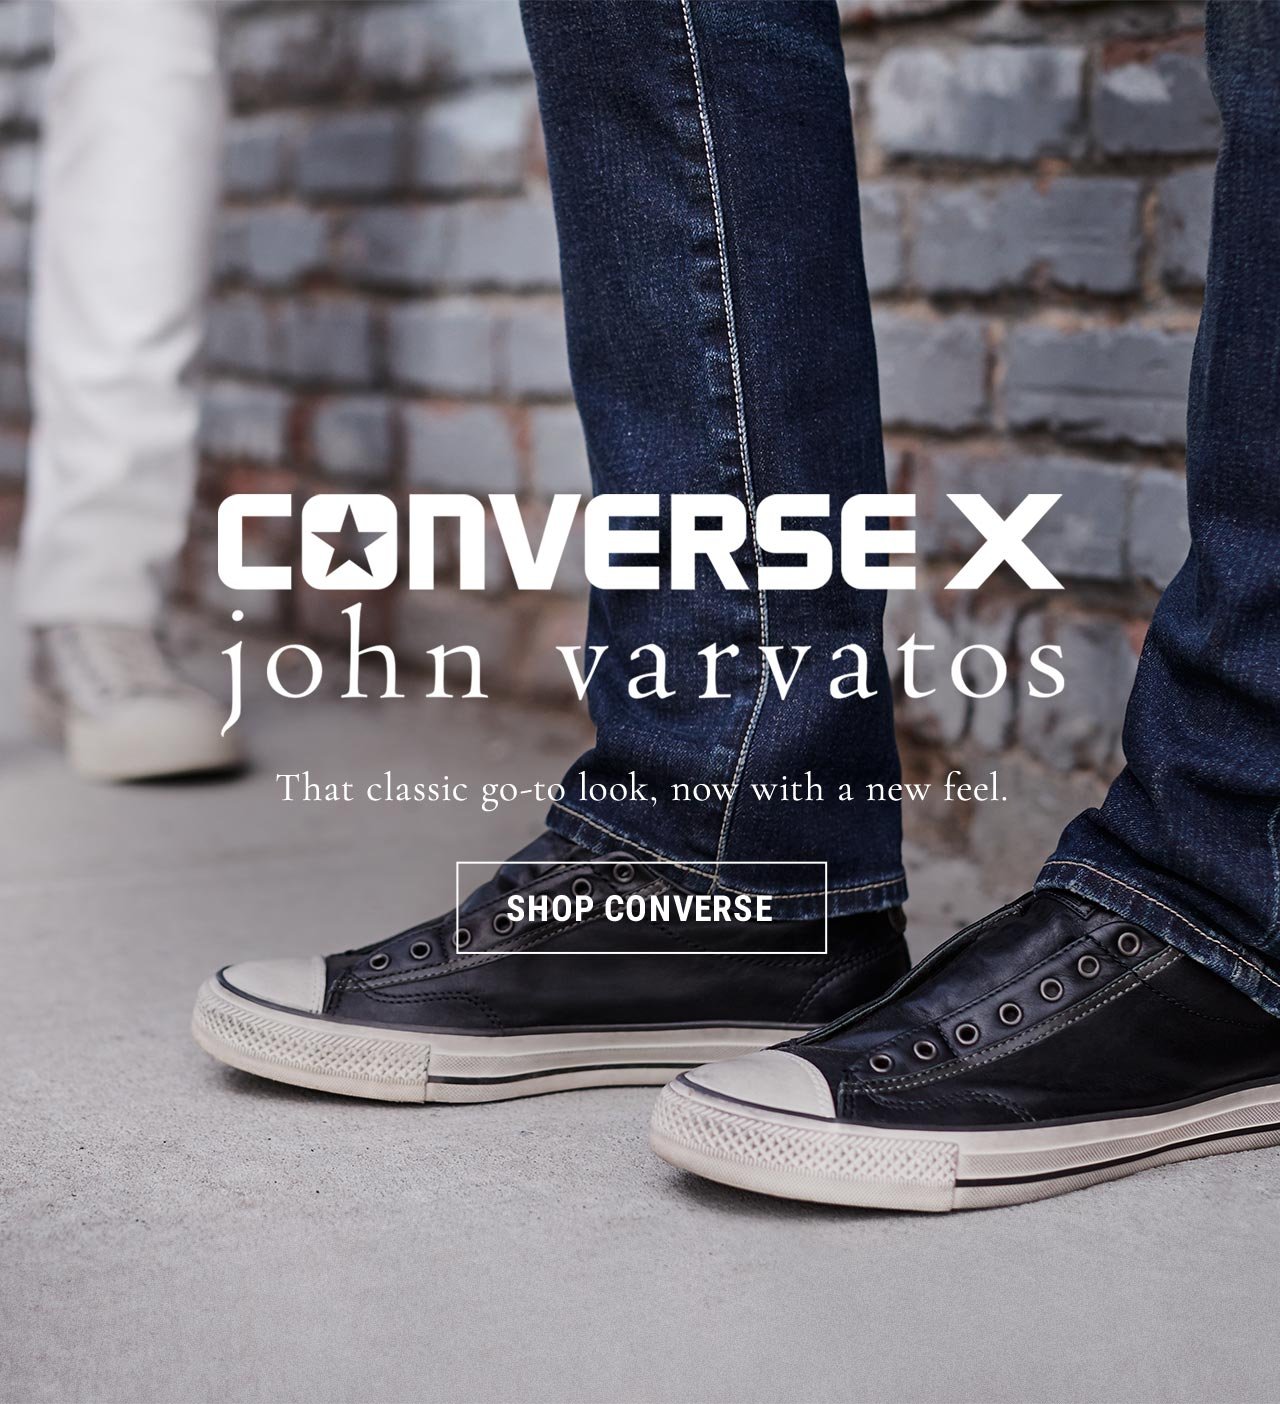 converse john varvatos collection